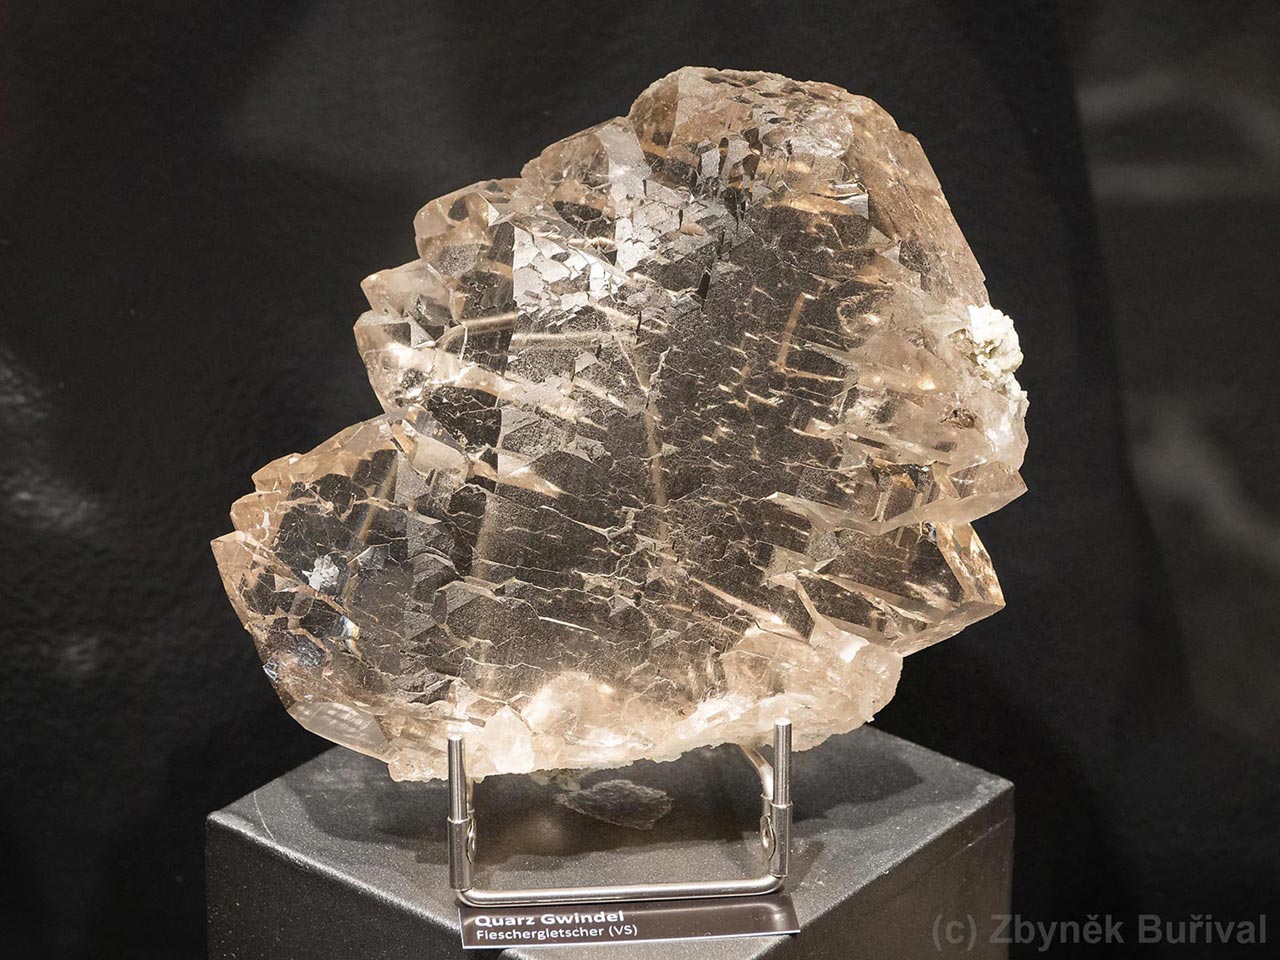 smoky quartz gwindel from Fieschergletscher, Switzerland